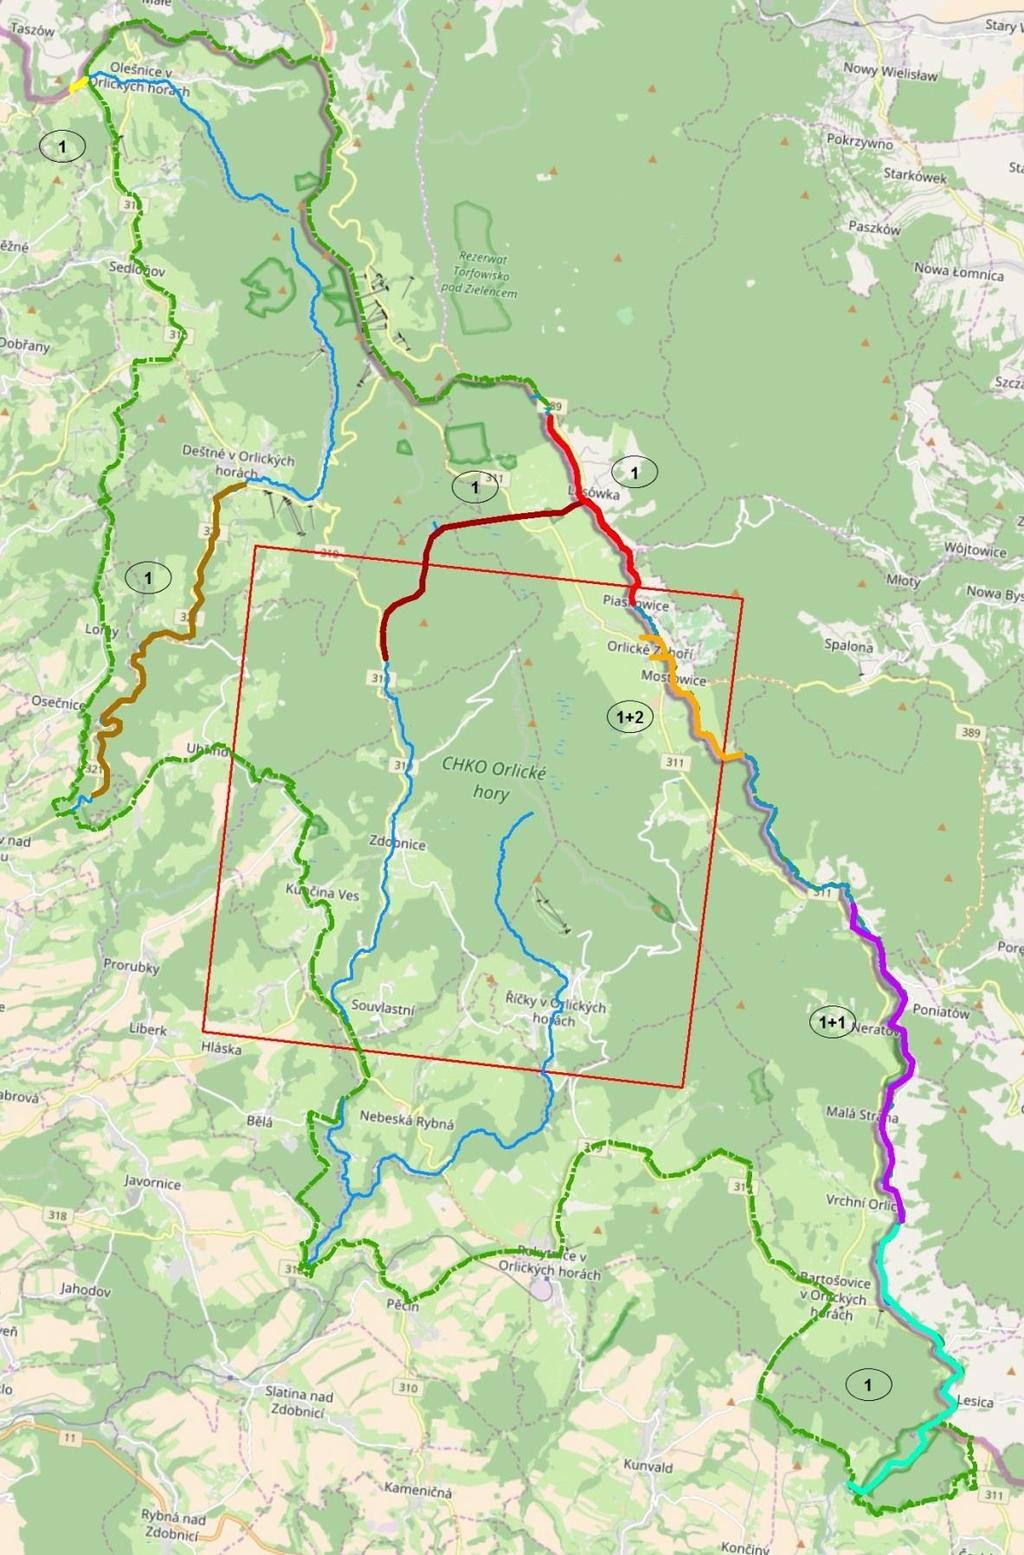 Obr. 7 Výsledky stopování v CHKO Orlické hory ze dne 23. 1. 2013. Vyznačený kvadrát má plochu 10 10 km. Zeleně hranice CHKO Orlické hory, stopovaná oblast.